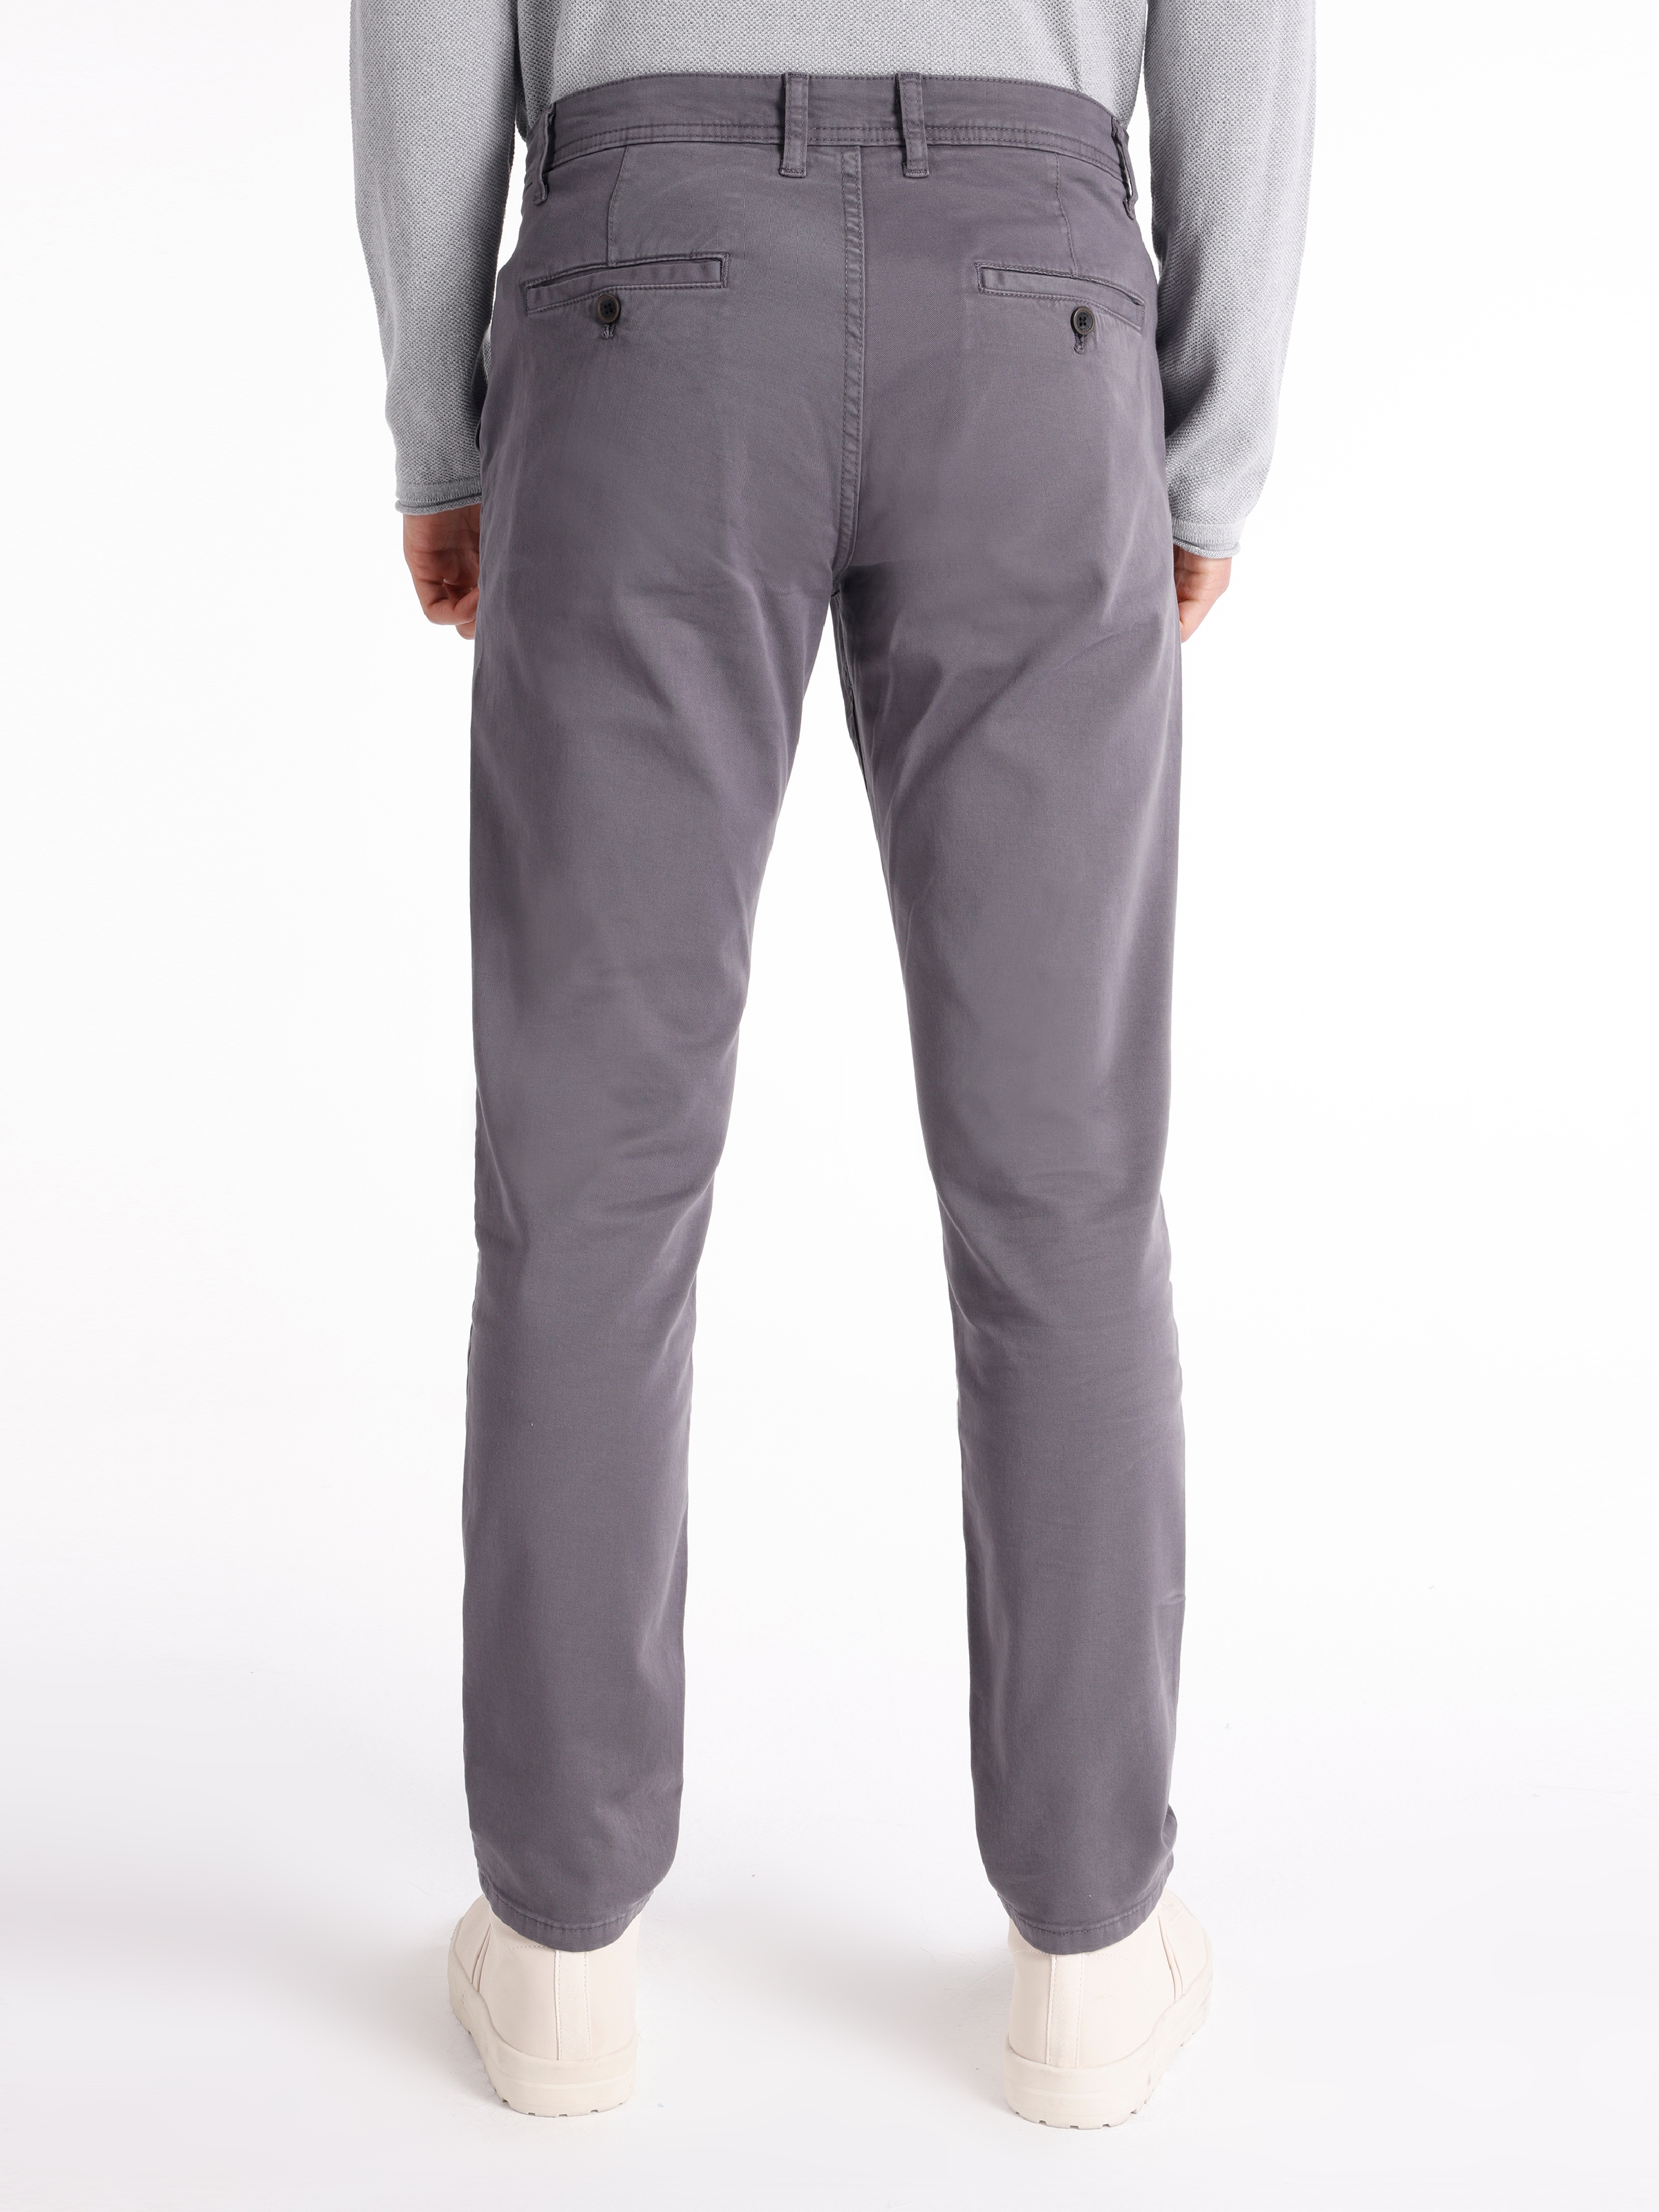 Afficher les détails de Pantalon Homme Gris Foncé Coupe Regular Taille Moyenne Coupe Normale Jambe Droite